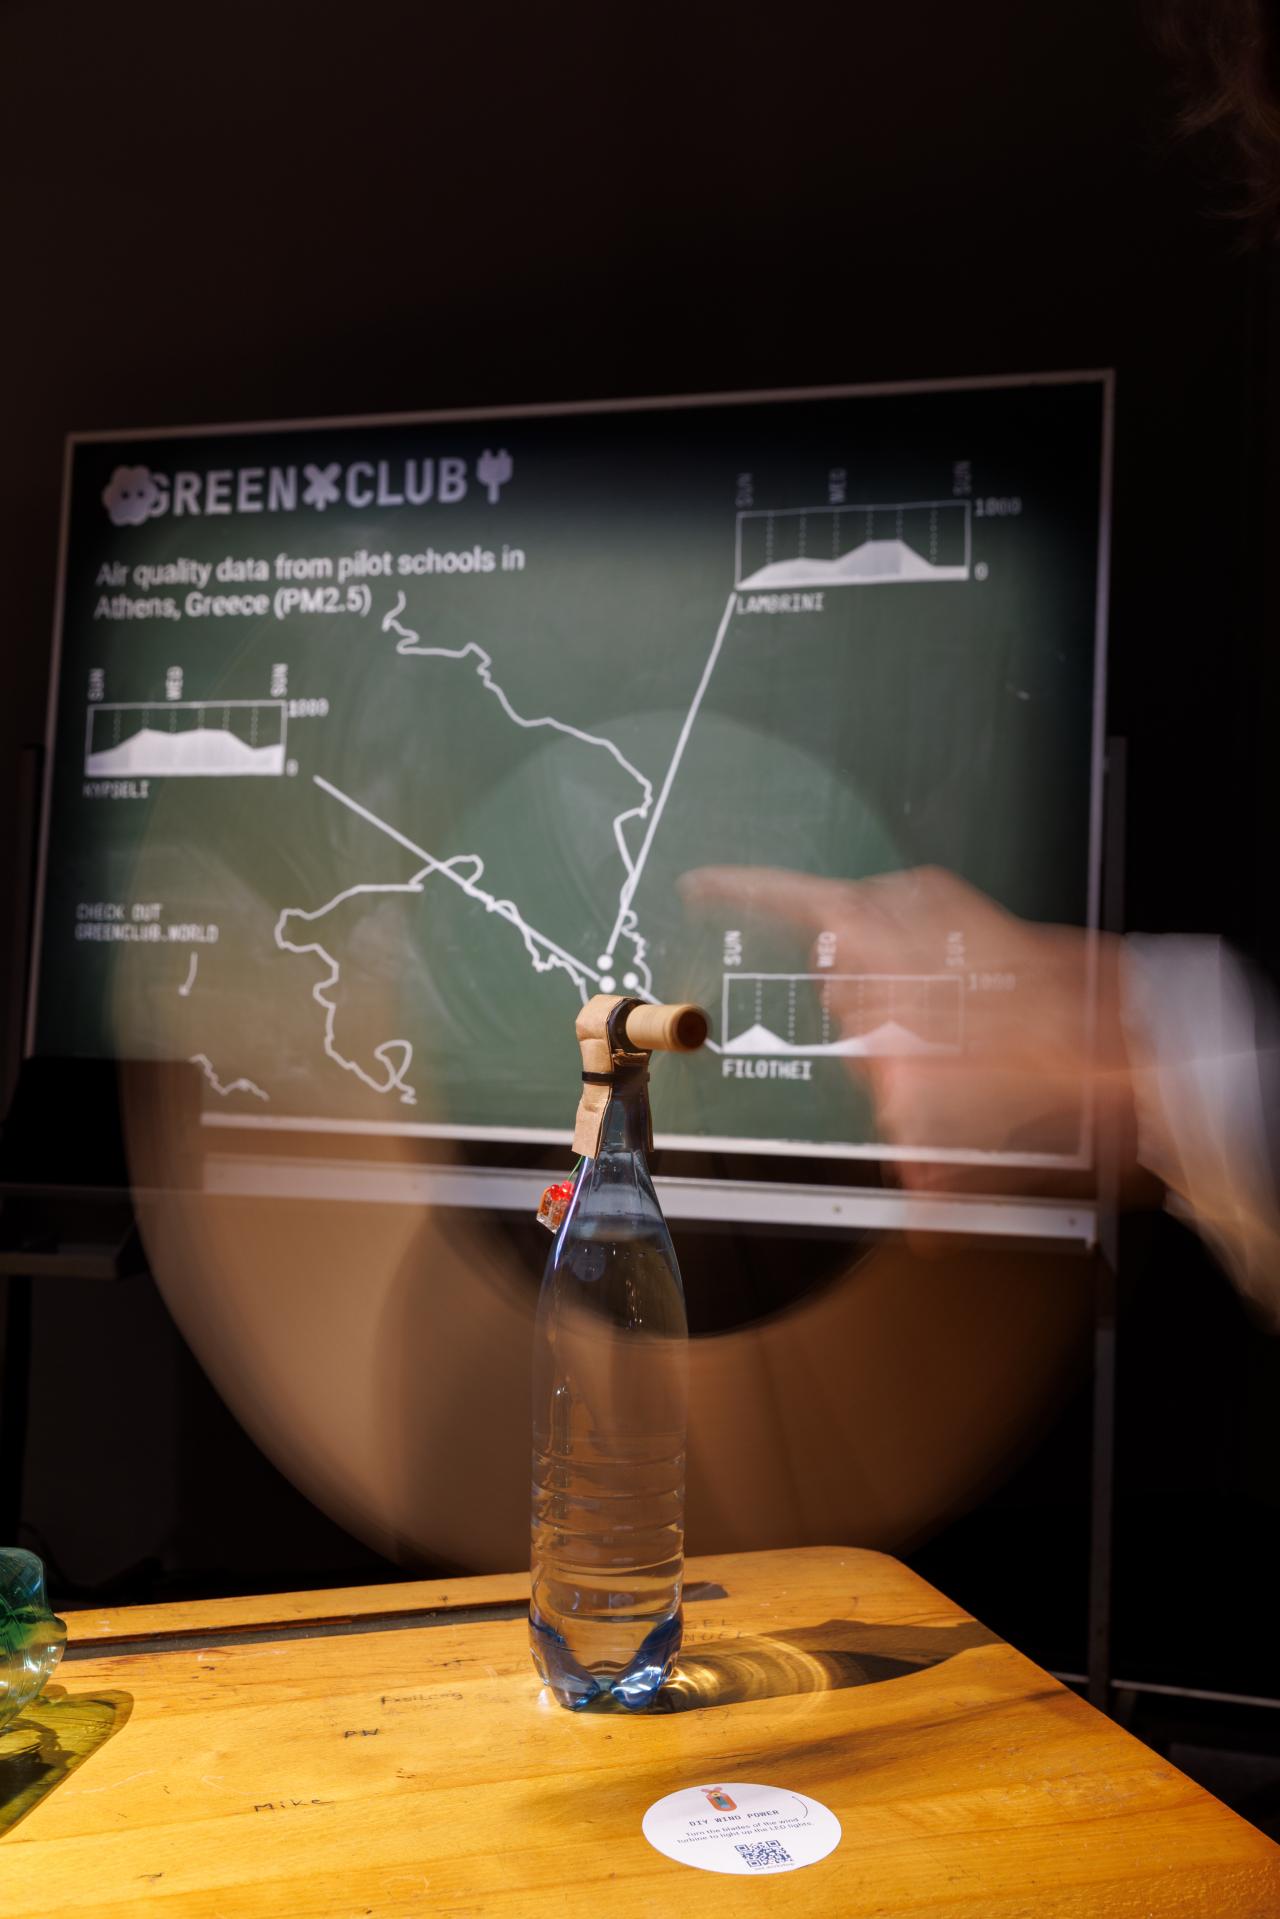 Im Vordergrund steht eine Glasflasche, auf der eine Art Rohr befestigt wurde. Im Hintergrund ist eine Tafel mit einer Statistik zu sehen.